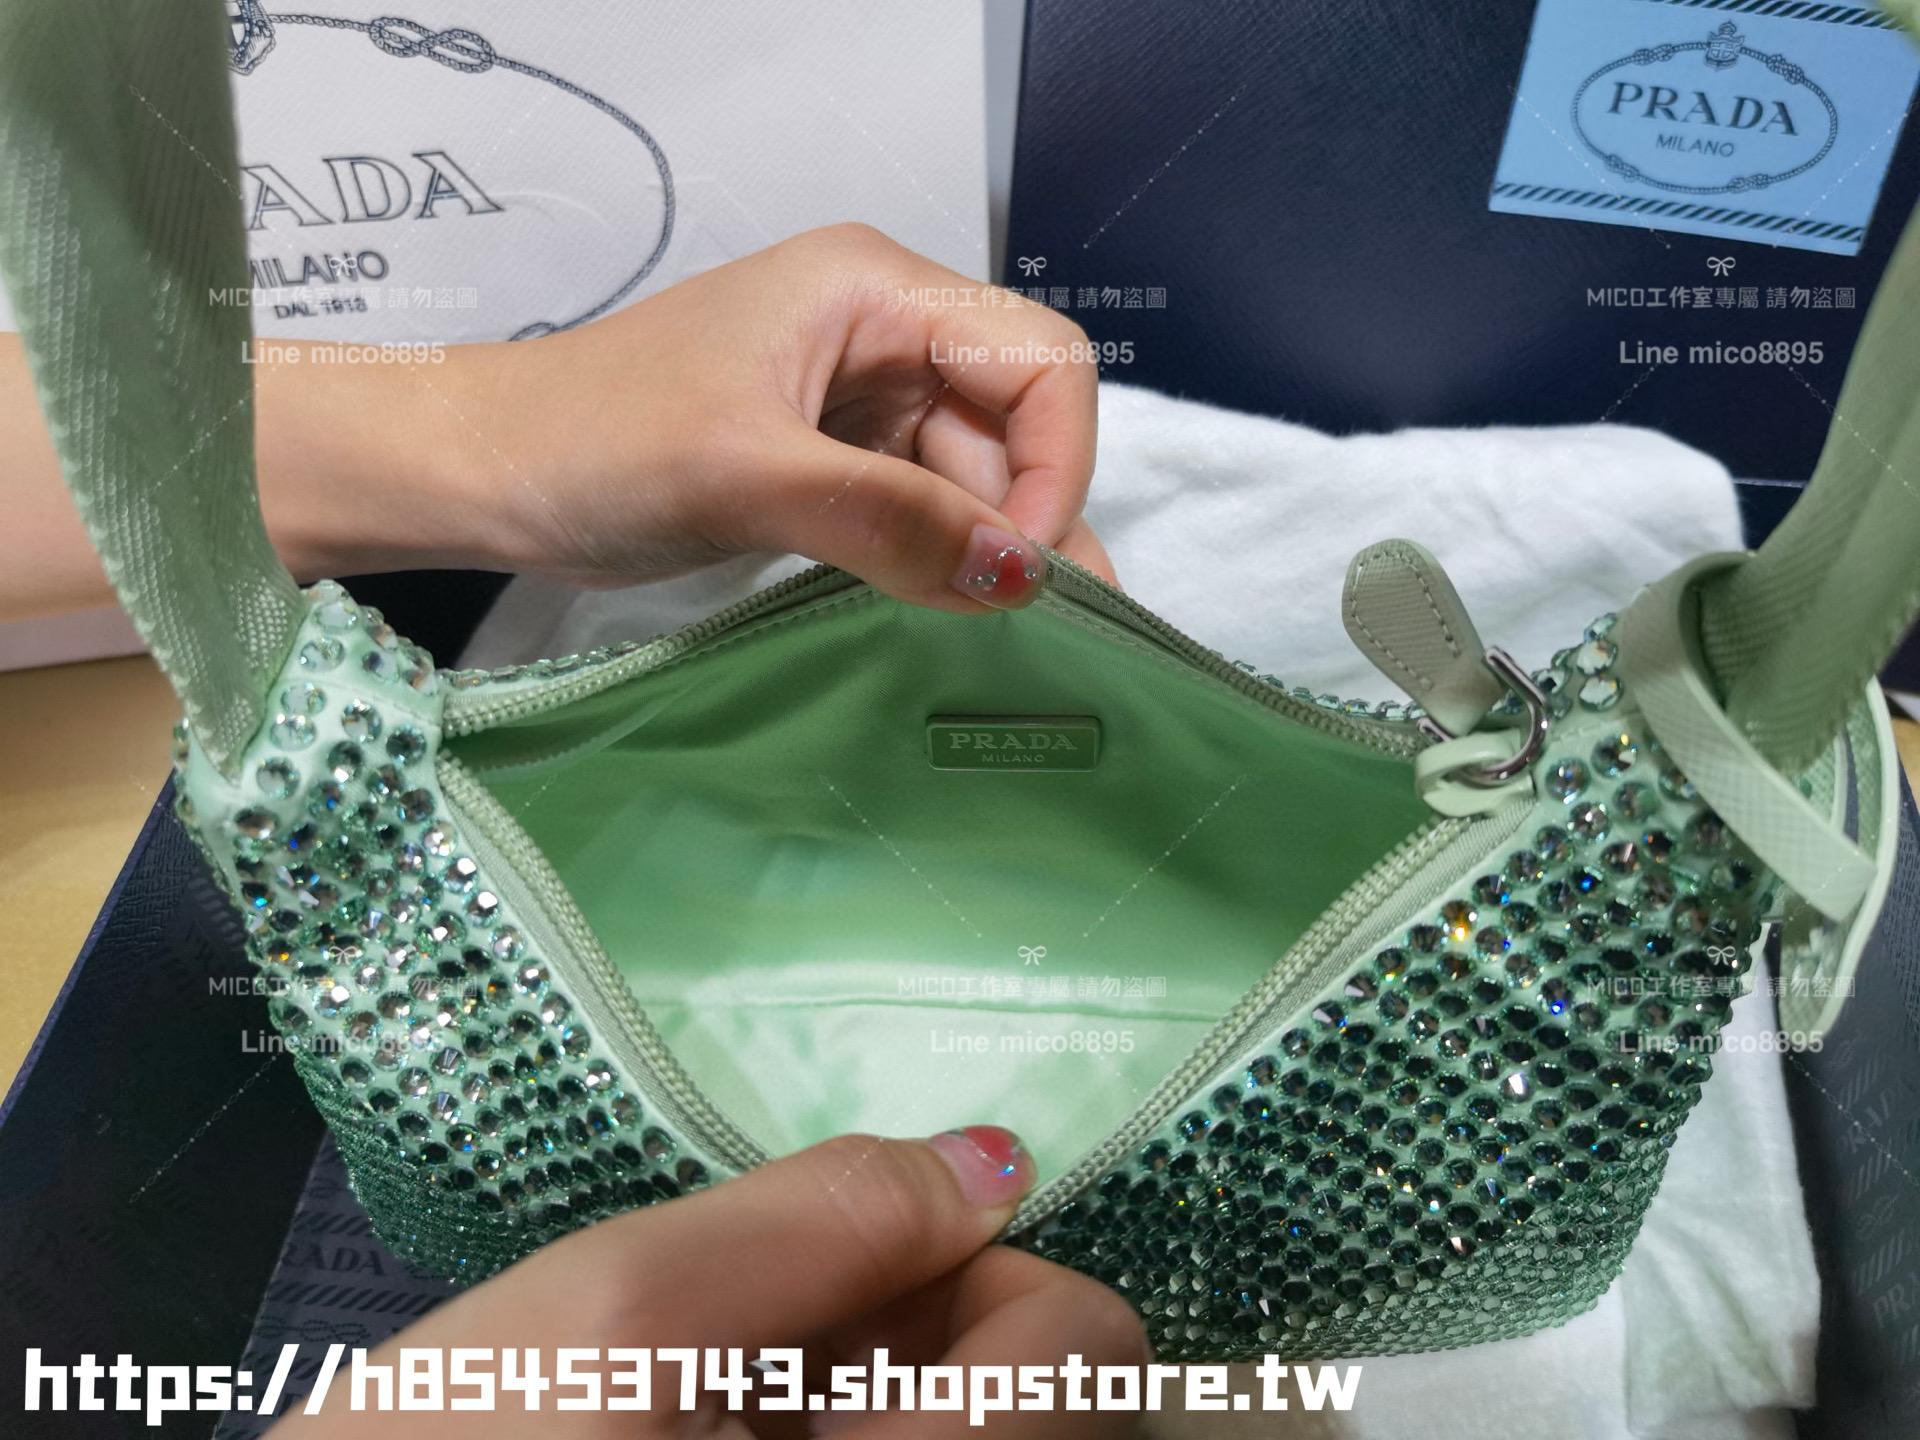 PRADA 普拉達 綠色 滿鑽版綢緞迷你手袋飾以水晶HOBO包 手提迷你包 22cm